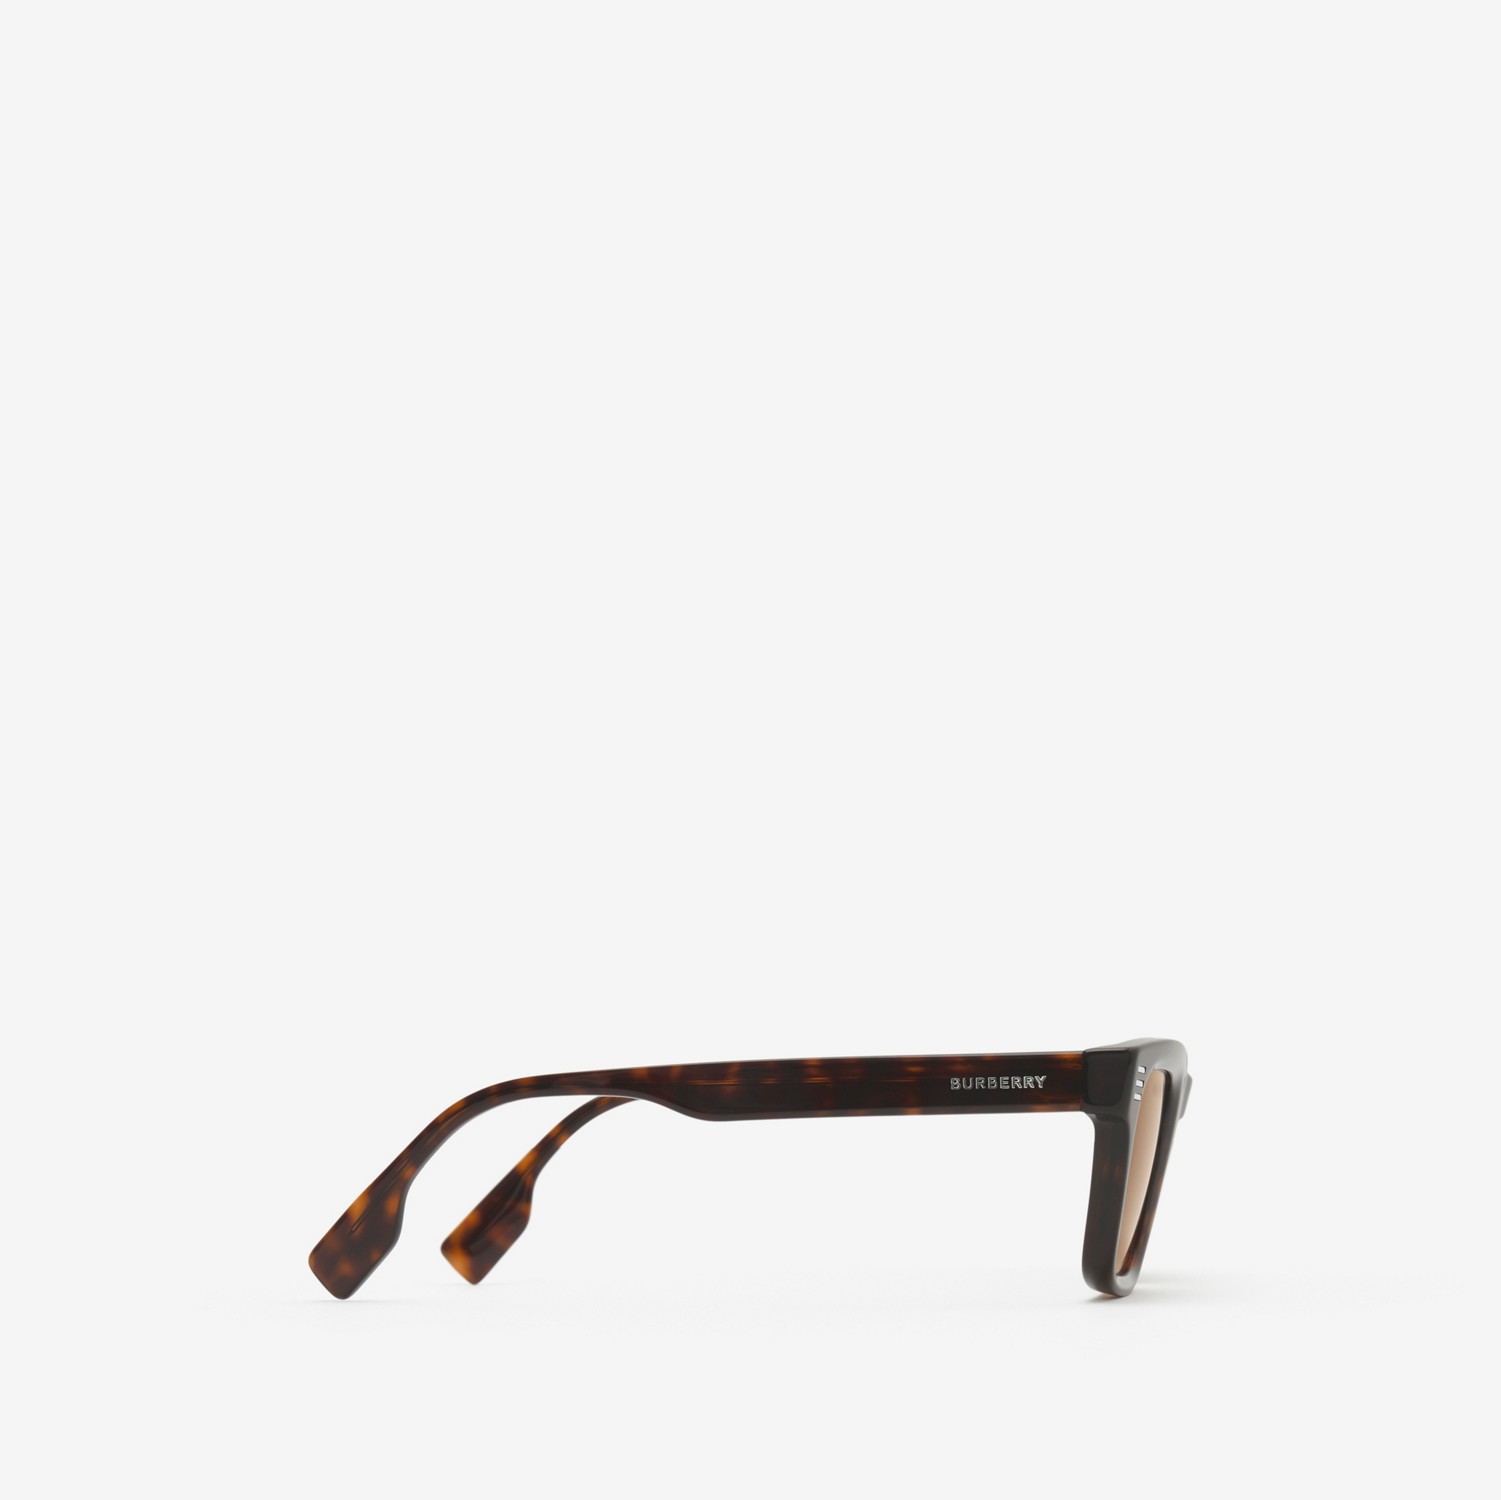 Stripe Square Sunglasses